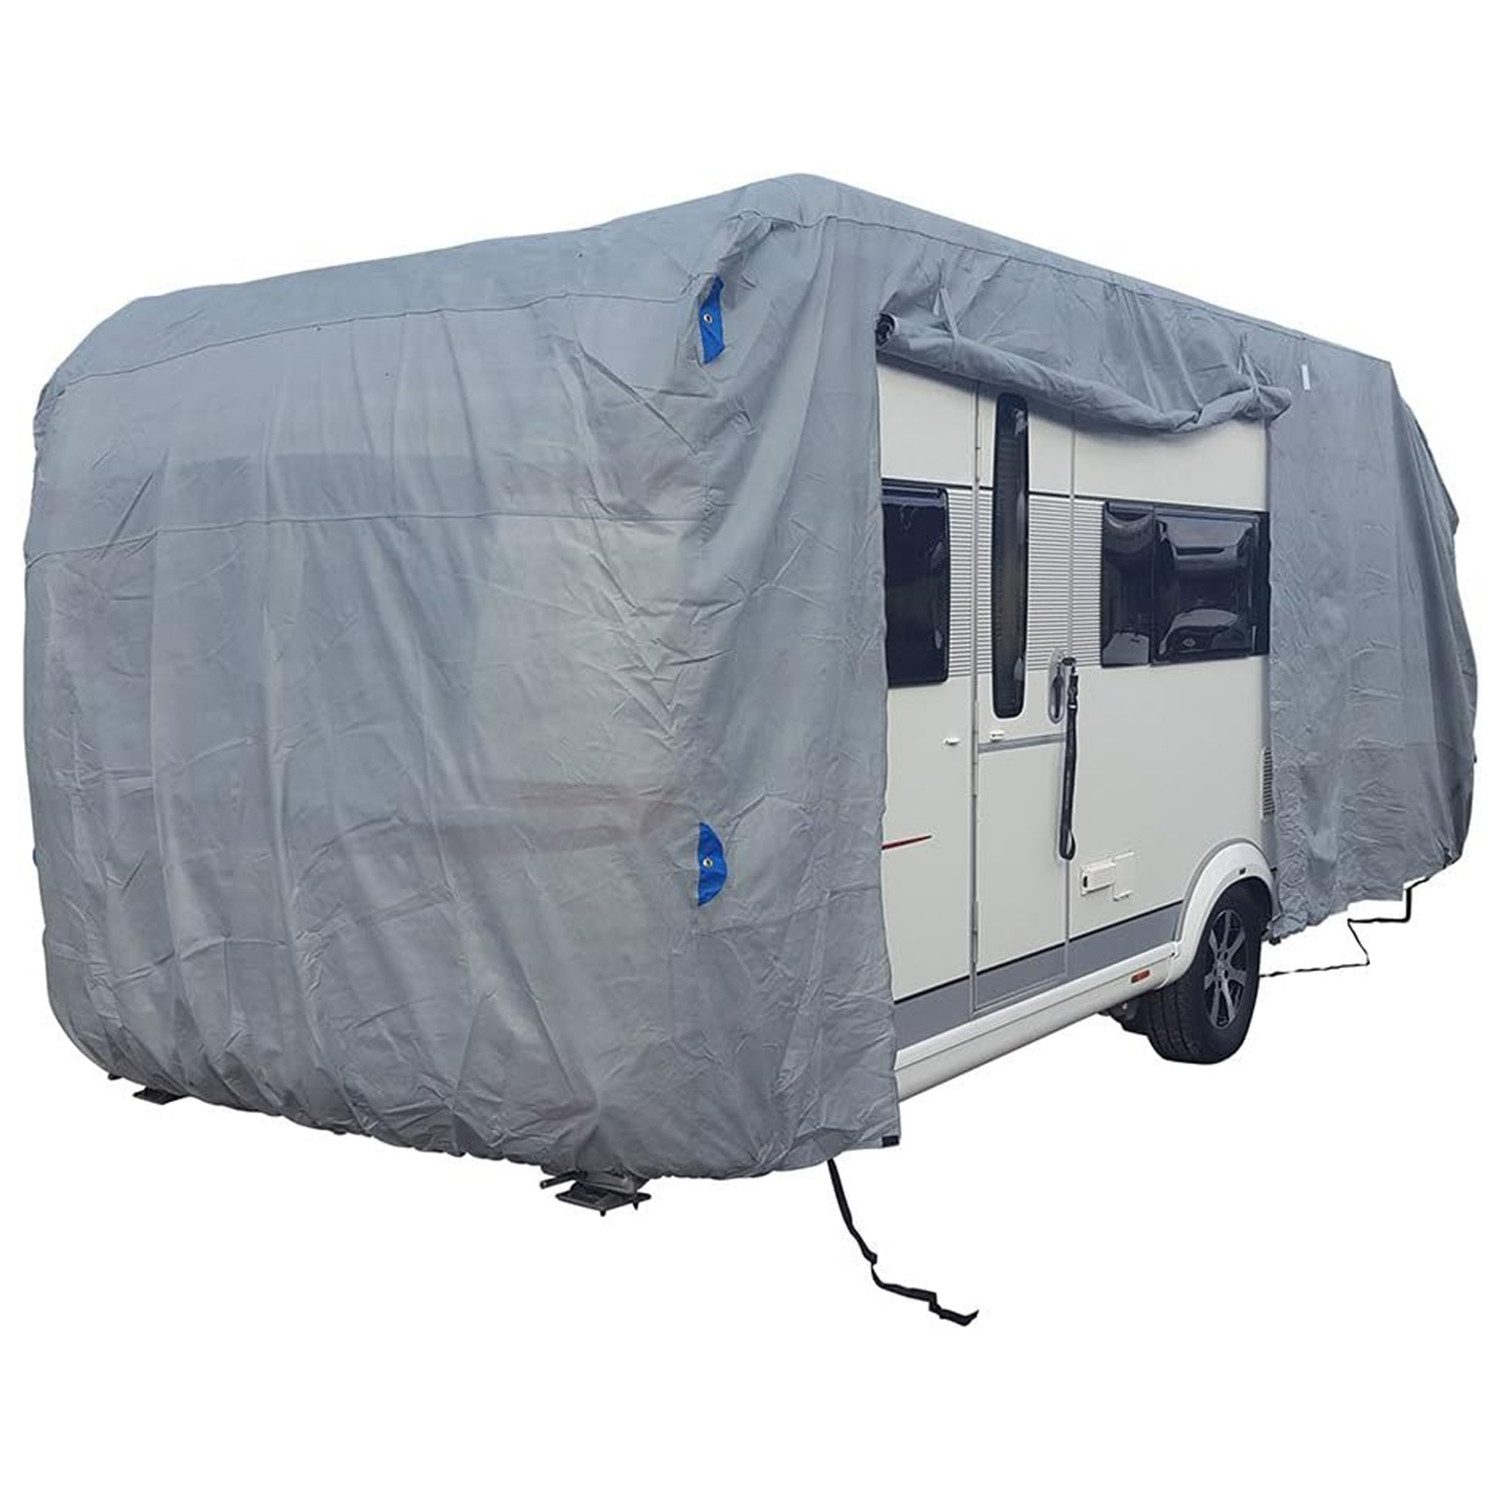 Fachhandel Plus Wohnwagenschutzhülle Premium Wohnwagenschutzhülle Caravan Abdeckung 550x250x220 cm, atmungsaktiv, UV-stabil, reißfest und schimmelresistent